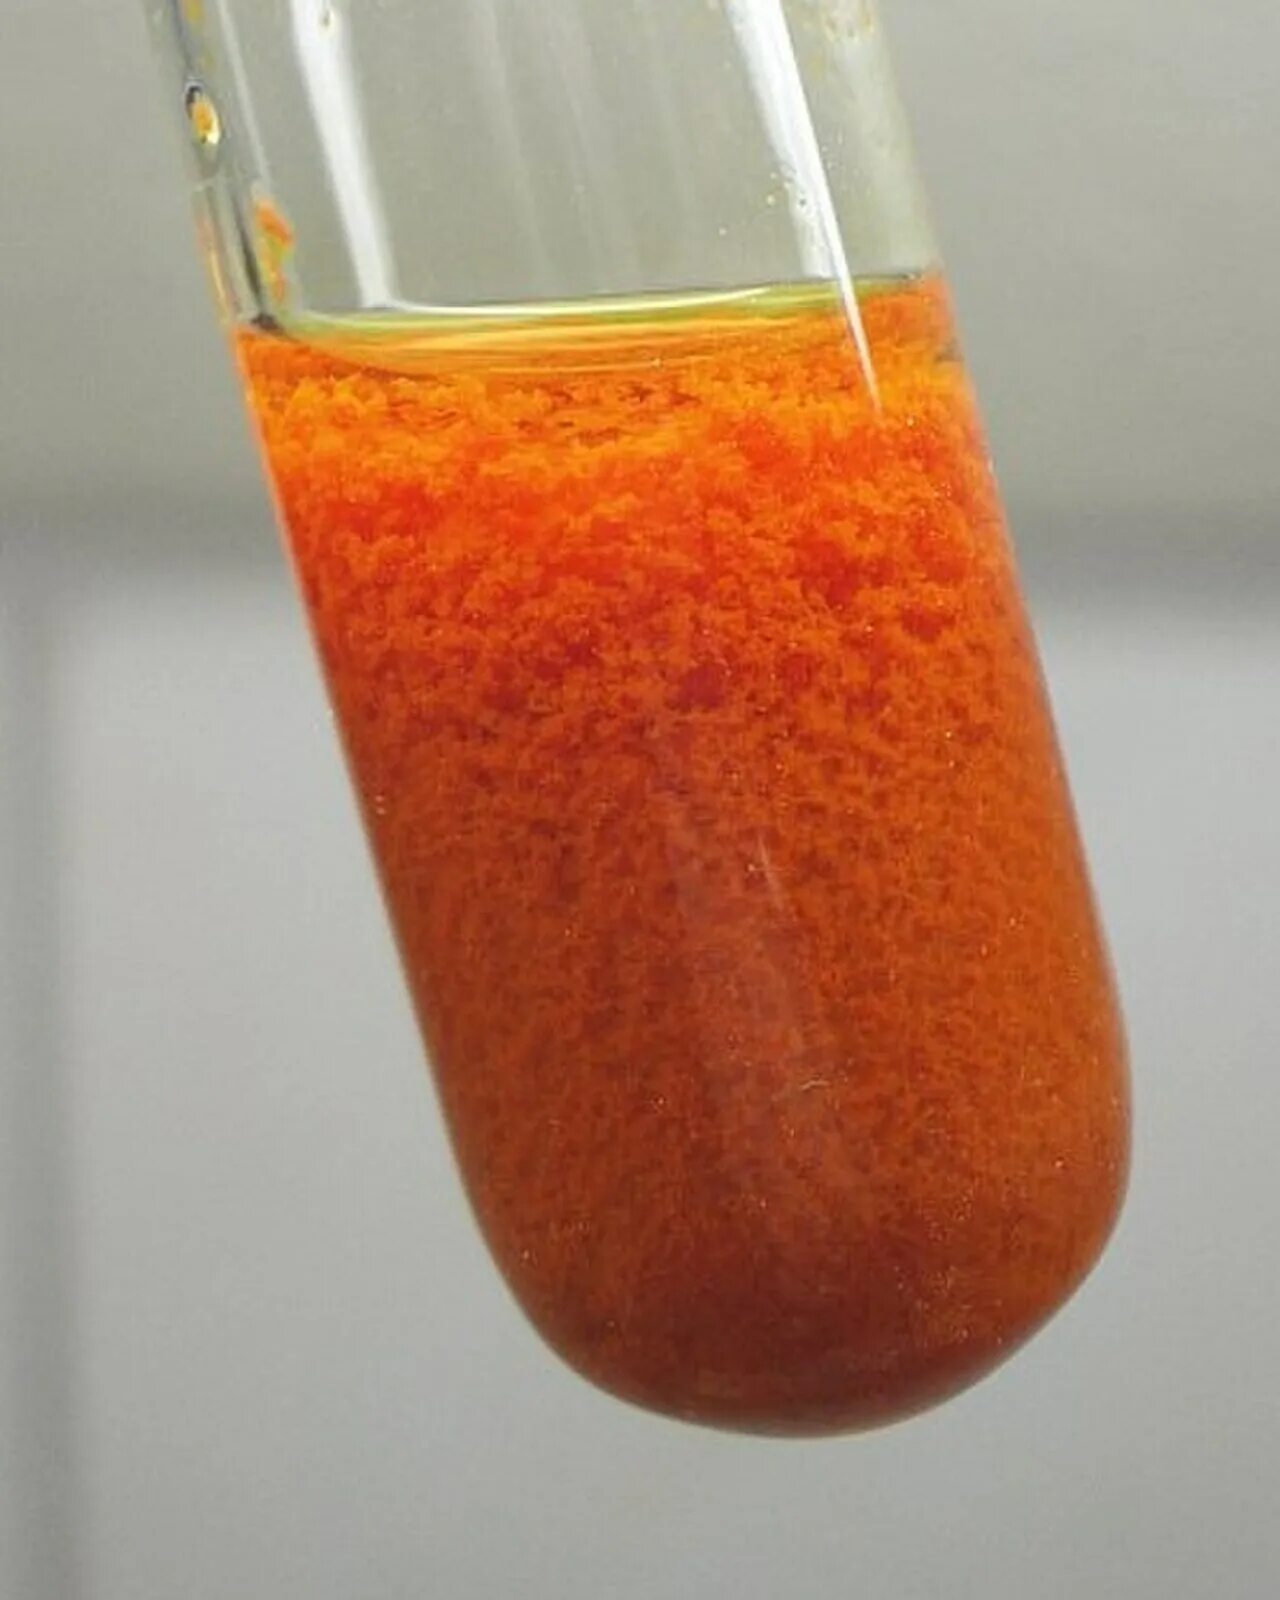 V oh 3. Оранжевый гидроксид меди. Гидроксид меди 1 цвет осадка. Cu2o раствор. Гидроксид железа 3 цвет.